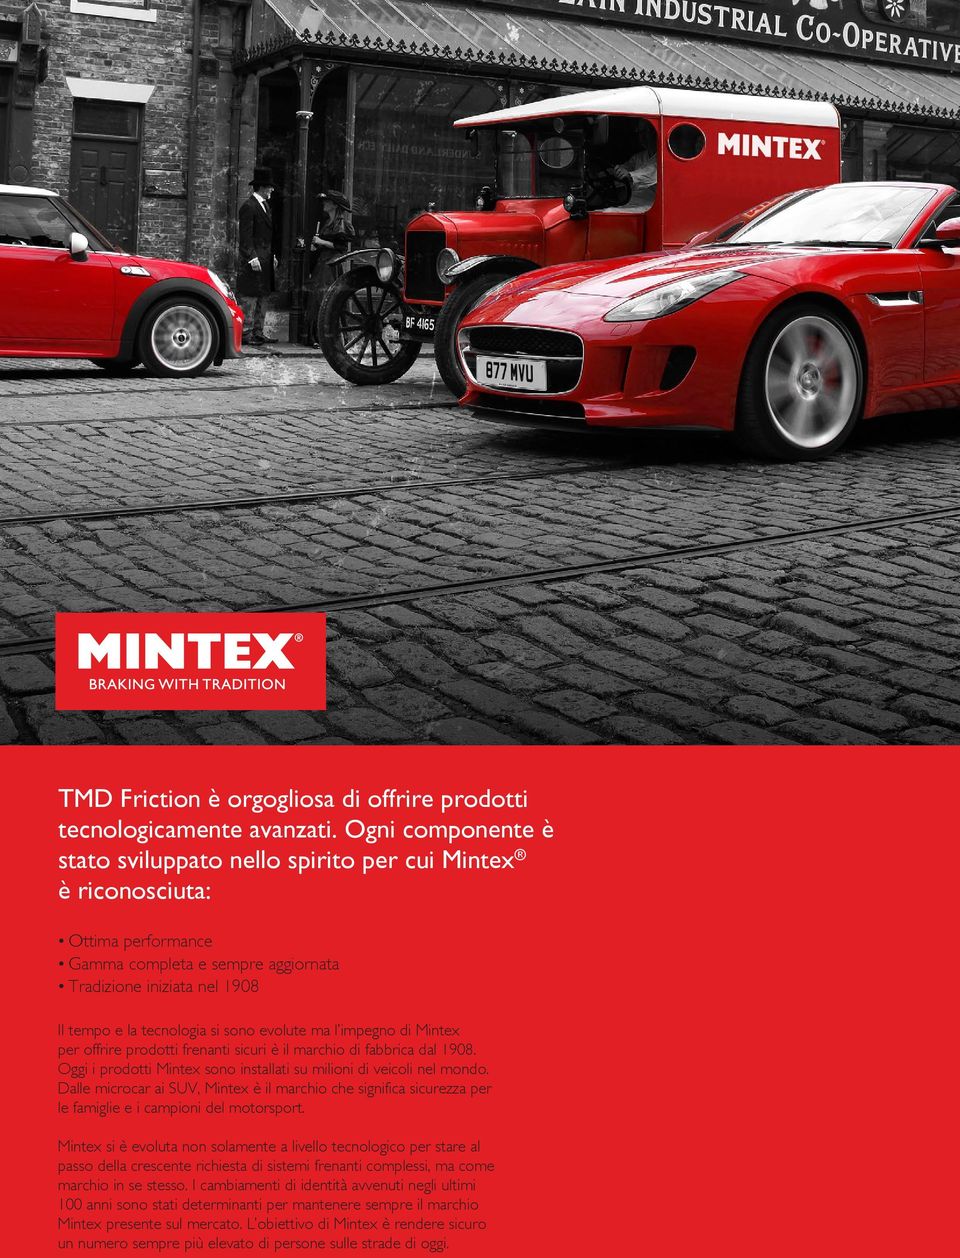 evolute ma l impegno di Mintex per offrire prodotti frenanti sicuri è il marchio di fabbrica dal 1908. Oggi i prodotti Mintex sono installati su milioni di veicoli nel mondo.